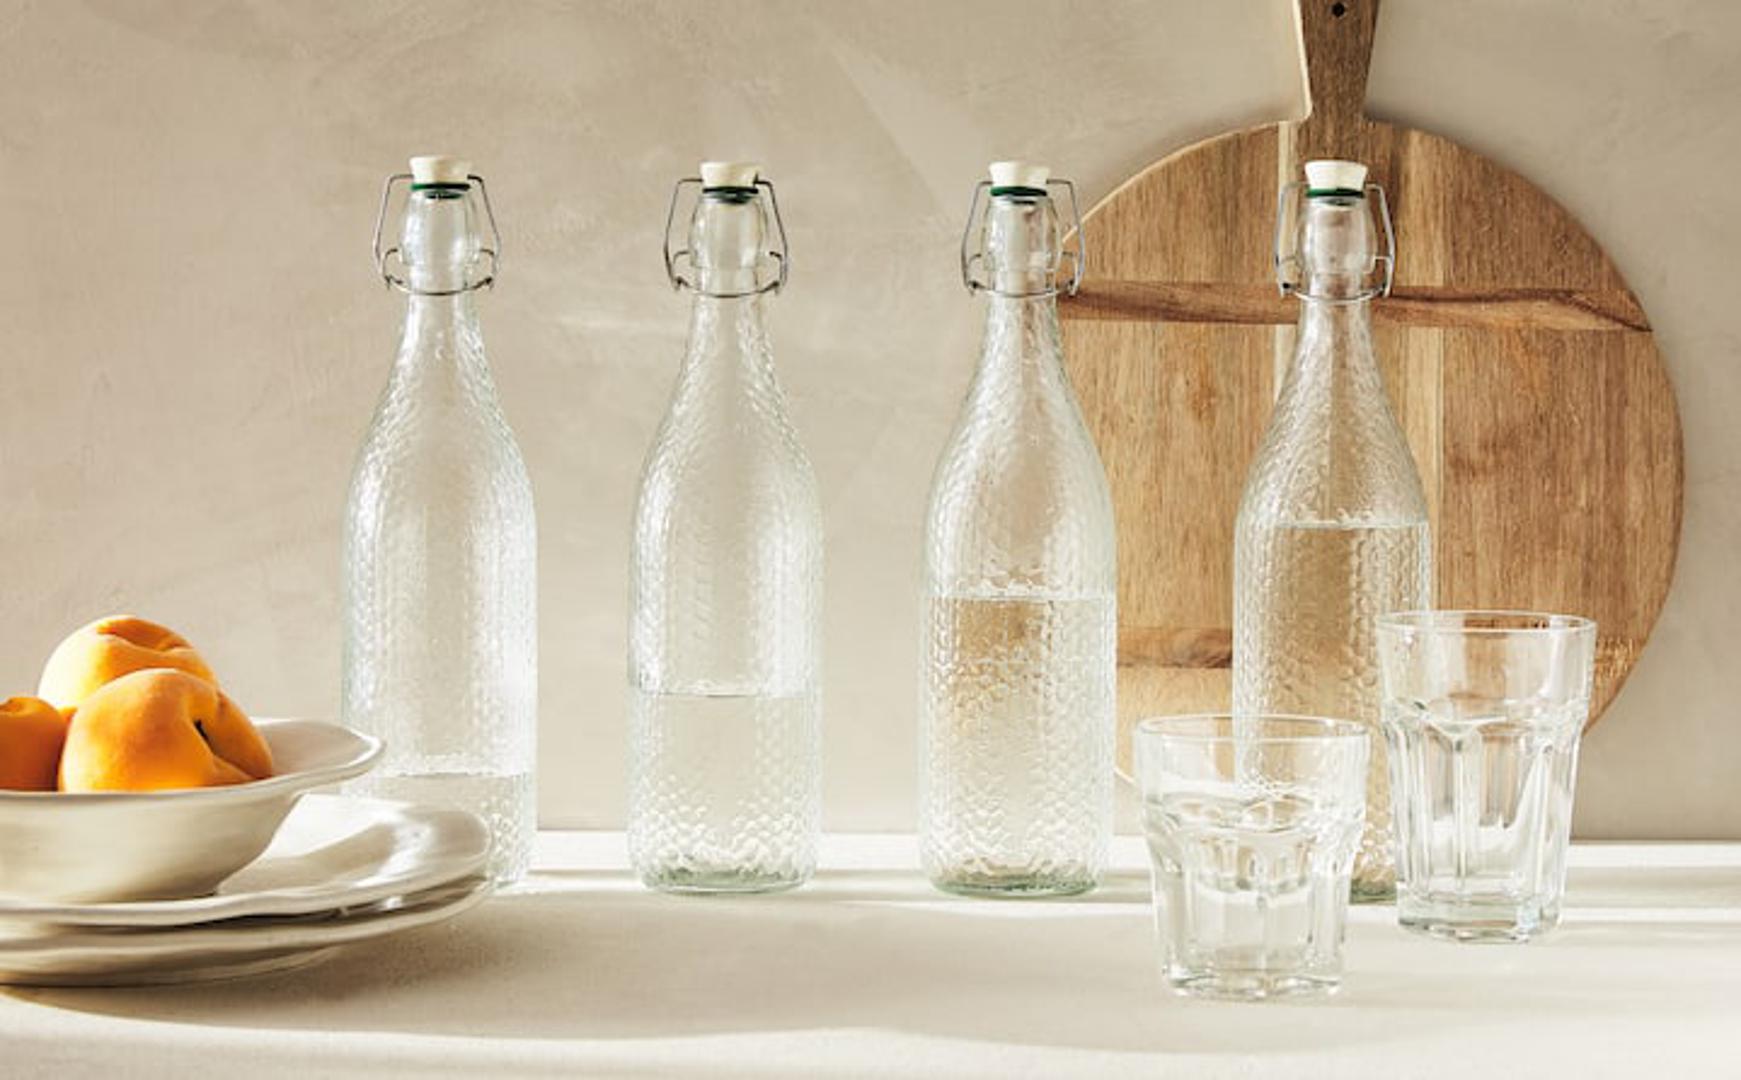 Retro inspiracija - staklene boce i čaše koje su ujedno i dobar ukras na stolu